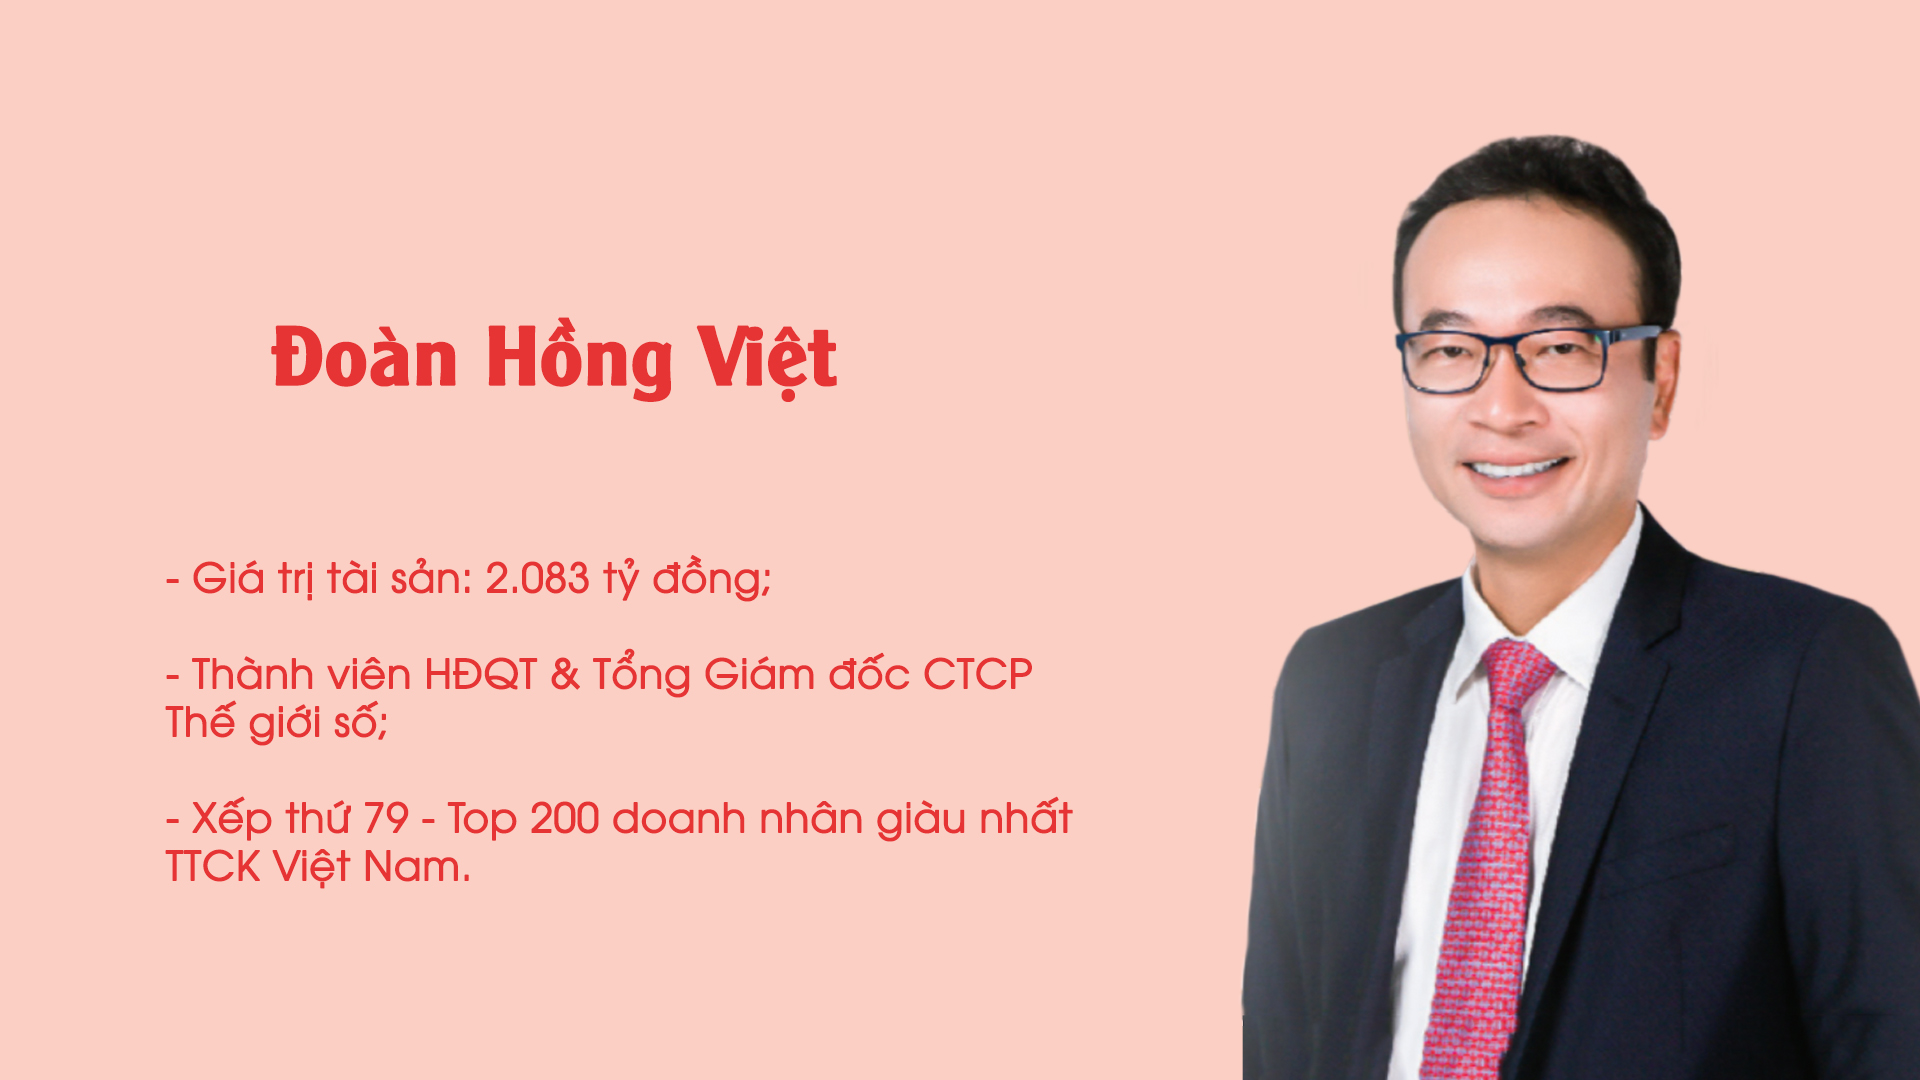 5 tỷ phú quê Hà Tĩnh trong top 200 doanh nhân giàu nhất TTCK Việt Nam 2021 là ai?